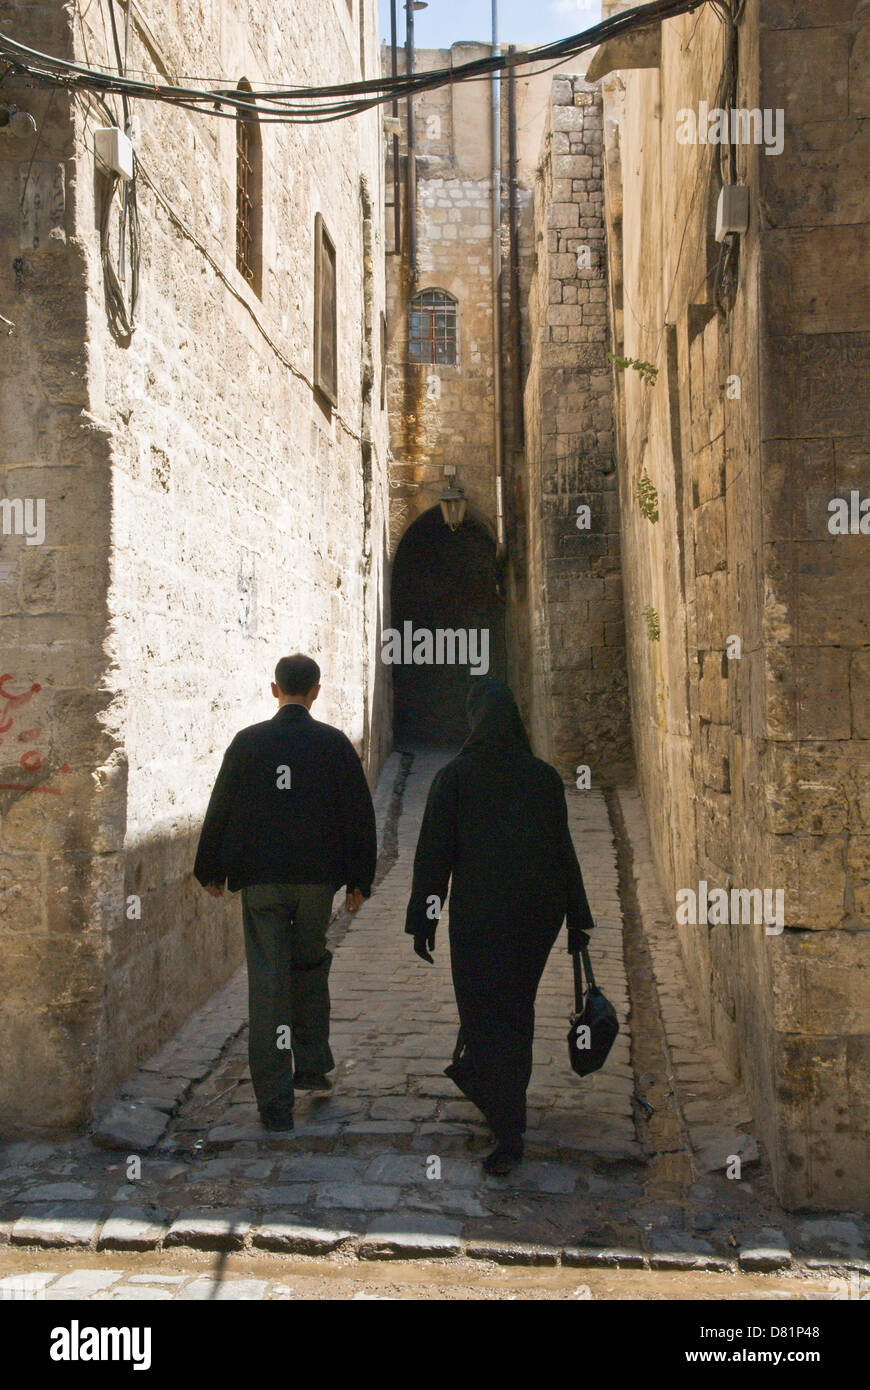 Aleppo Syrien. Ein Mann und eine Frau zu Fuß hinunter eine alte gepflasterte Gasse in der Altstadt, ein UNESCO-Weltkulturerbe. Stockfoto